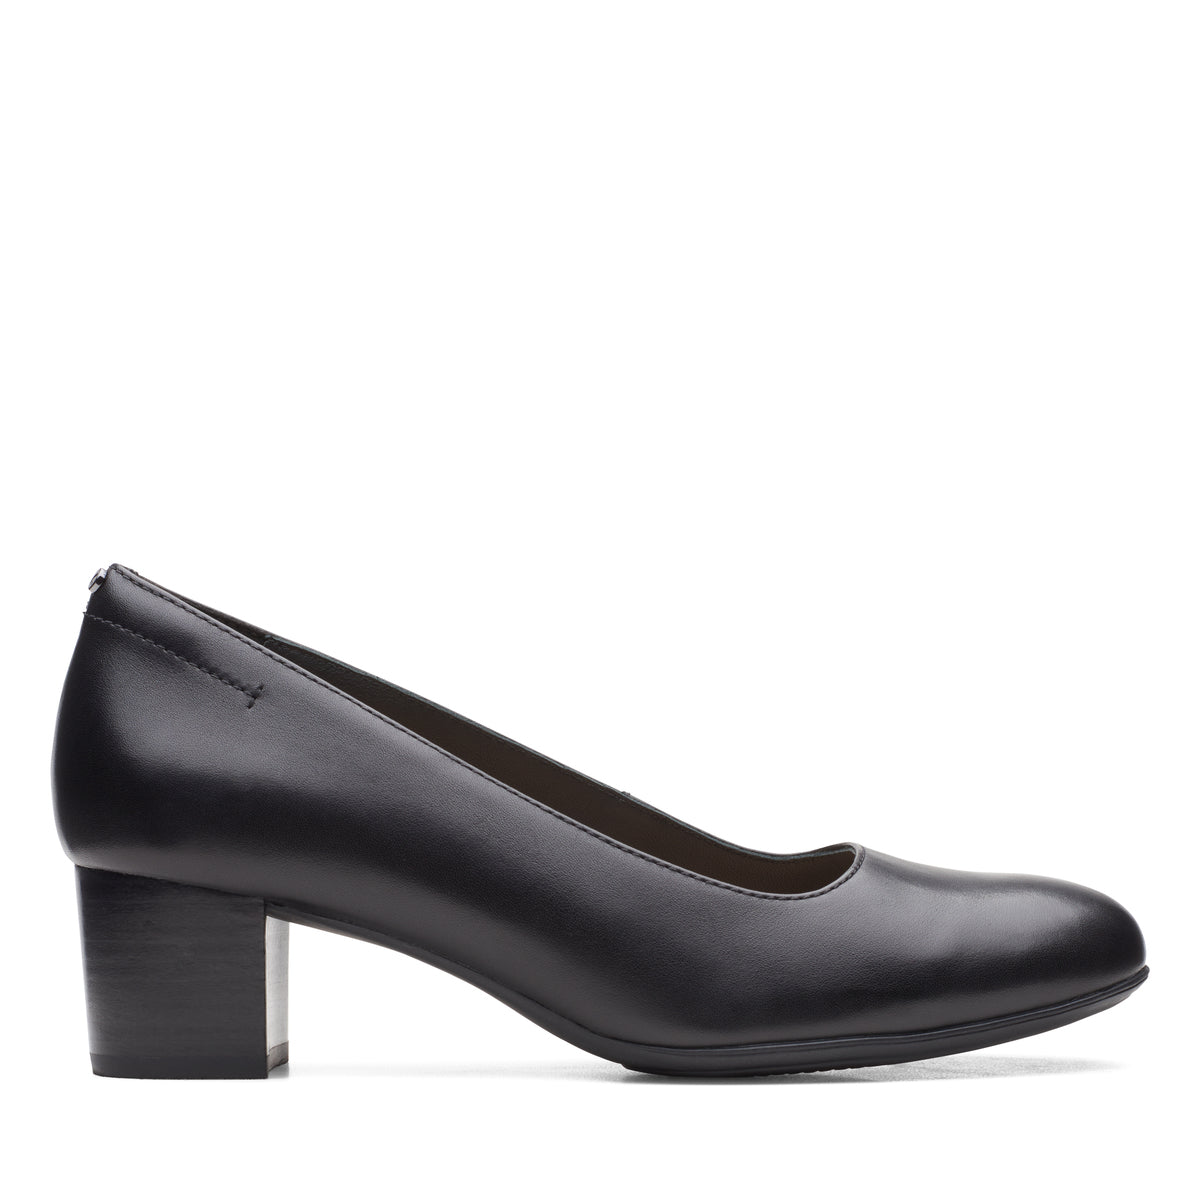 Zapatos De Tacón De La Marca Clarks Para Mujer Modelo Linnae Pump Black Leather En Color Negro